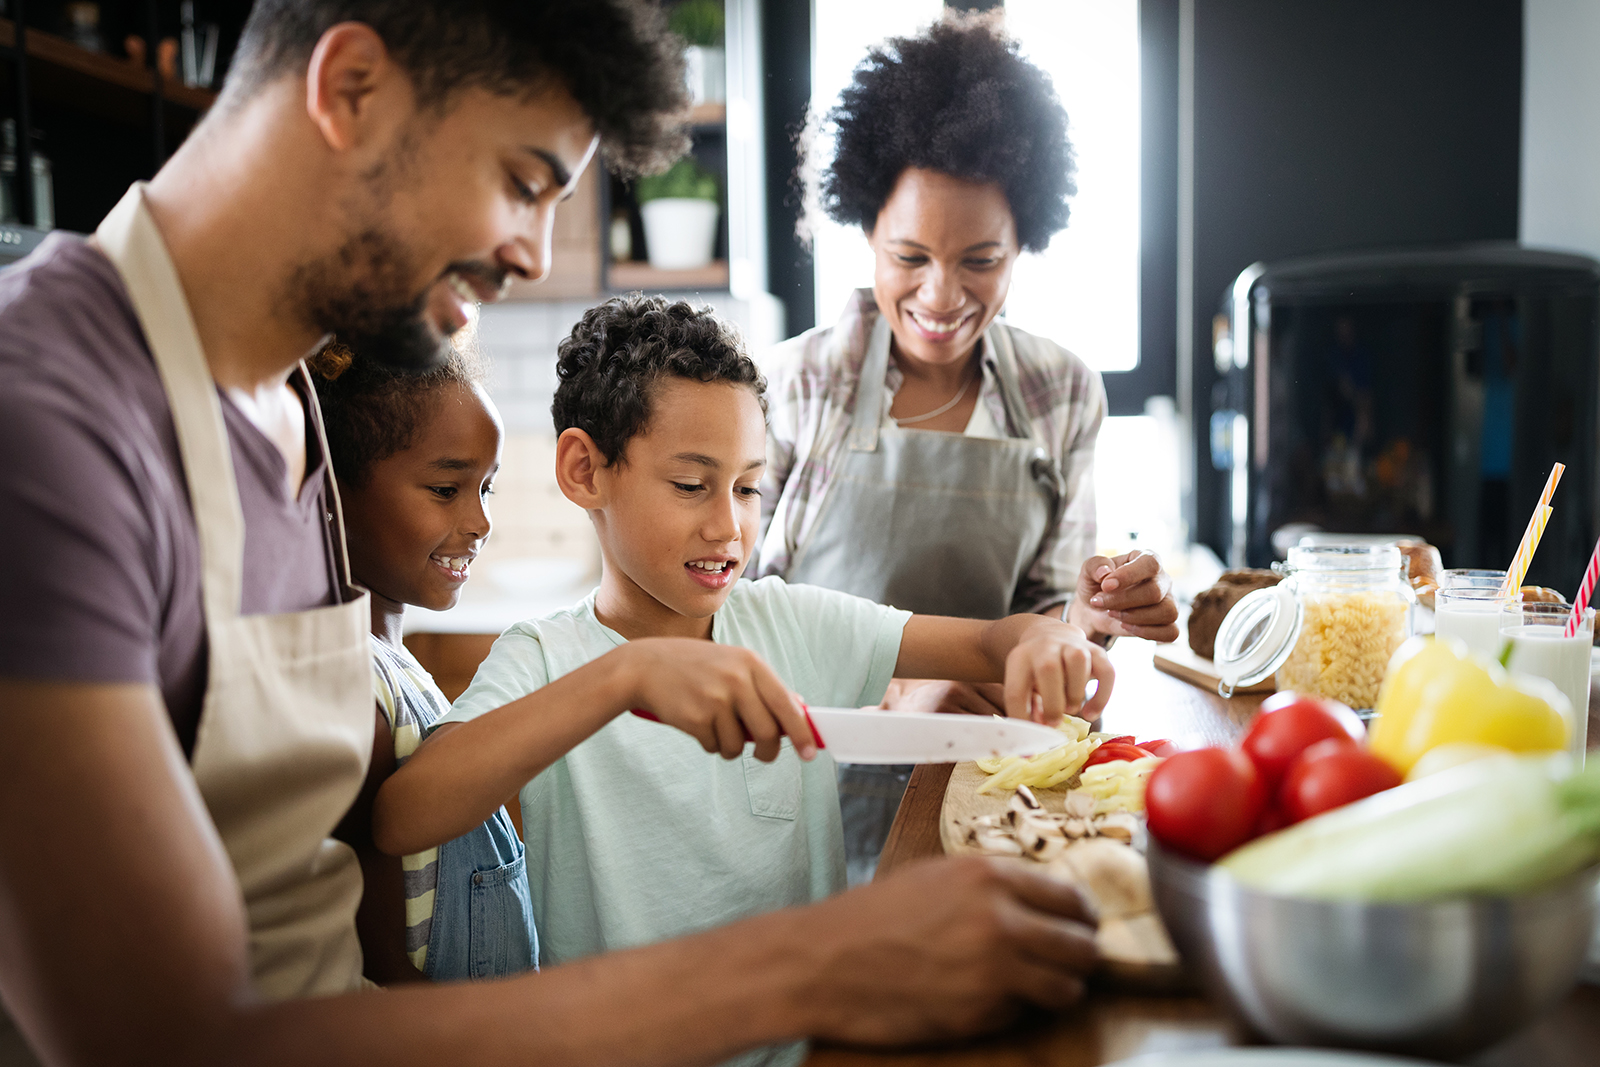 Les conseils de Virginie 29 mars 2020 - Cuisiner en famille